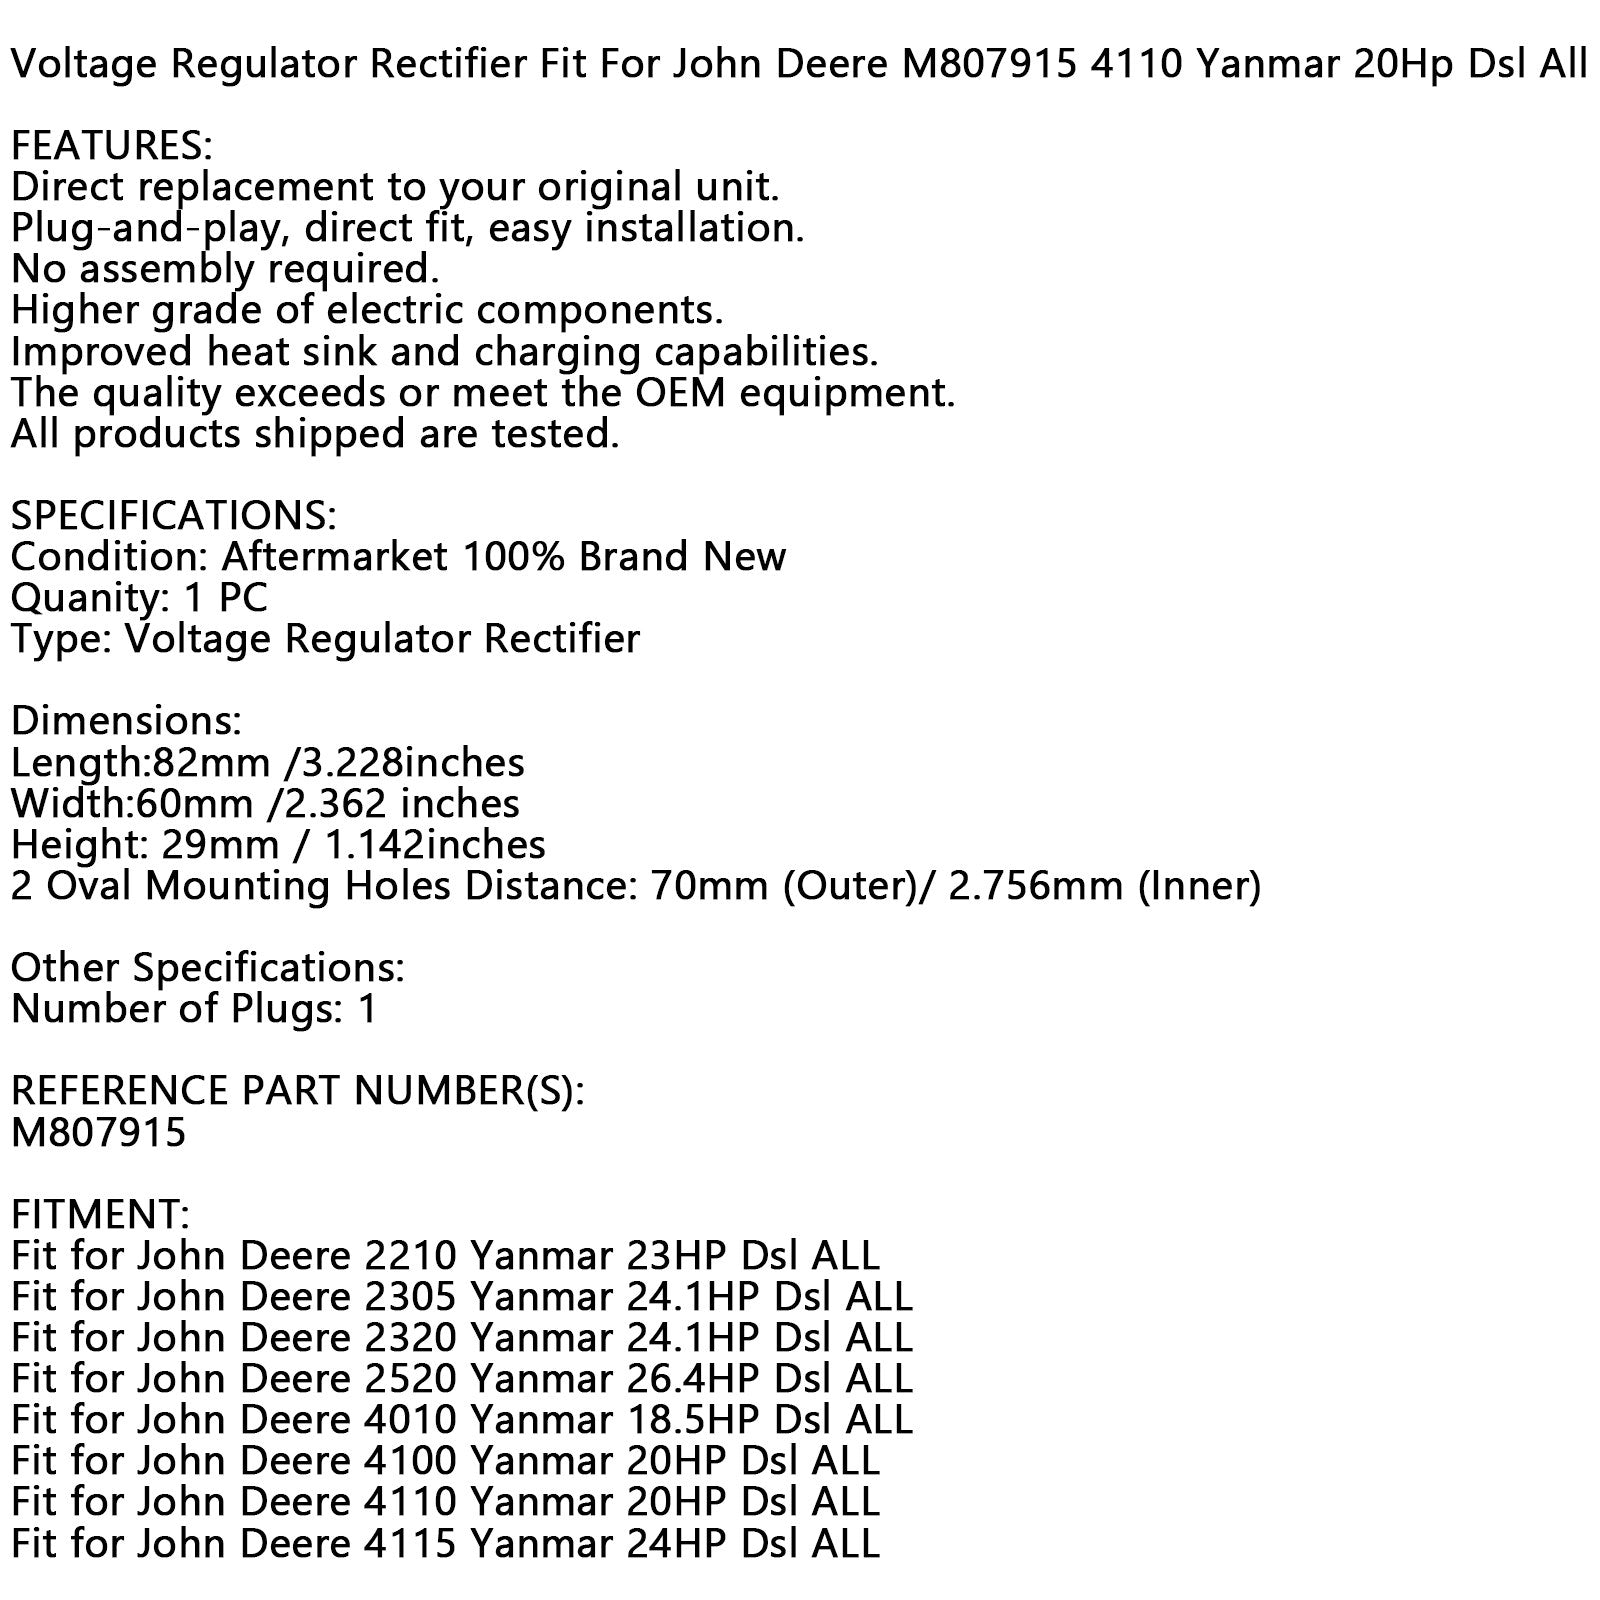 Voltage Regulator Fit For John Deere 2320 Yanmar 24.1Hp 4115 Yanmar 24Hpdsl All Generic